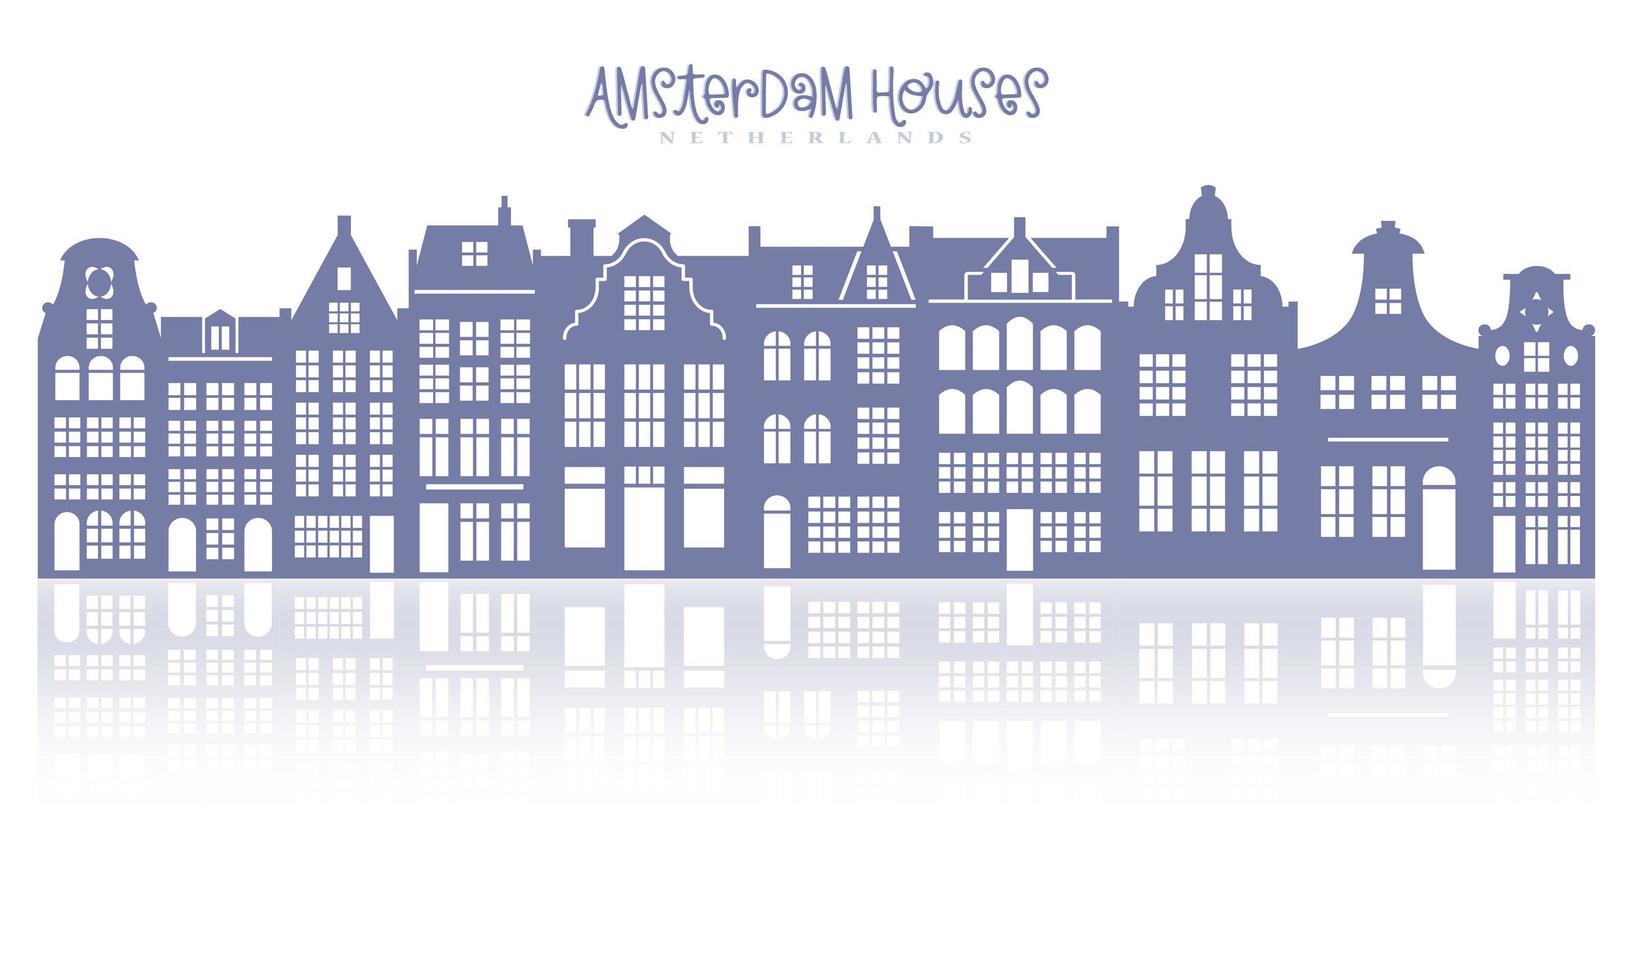 sagoma di una fila di case di amsterdam. facciate di vecchi edifici europei per la decorazione natalizia. case olandesi con la riflessione. vettore